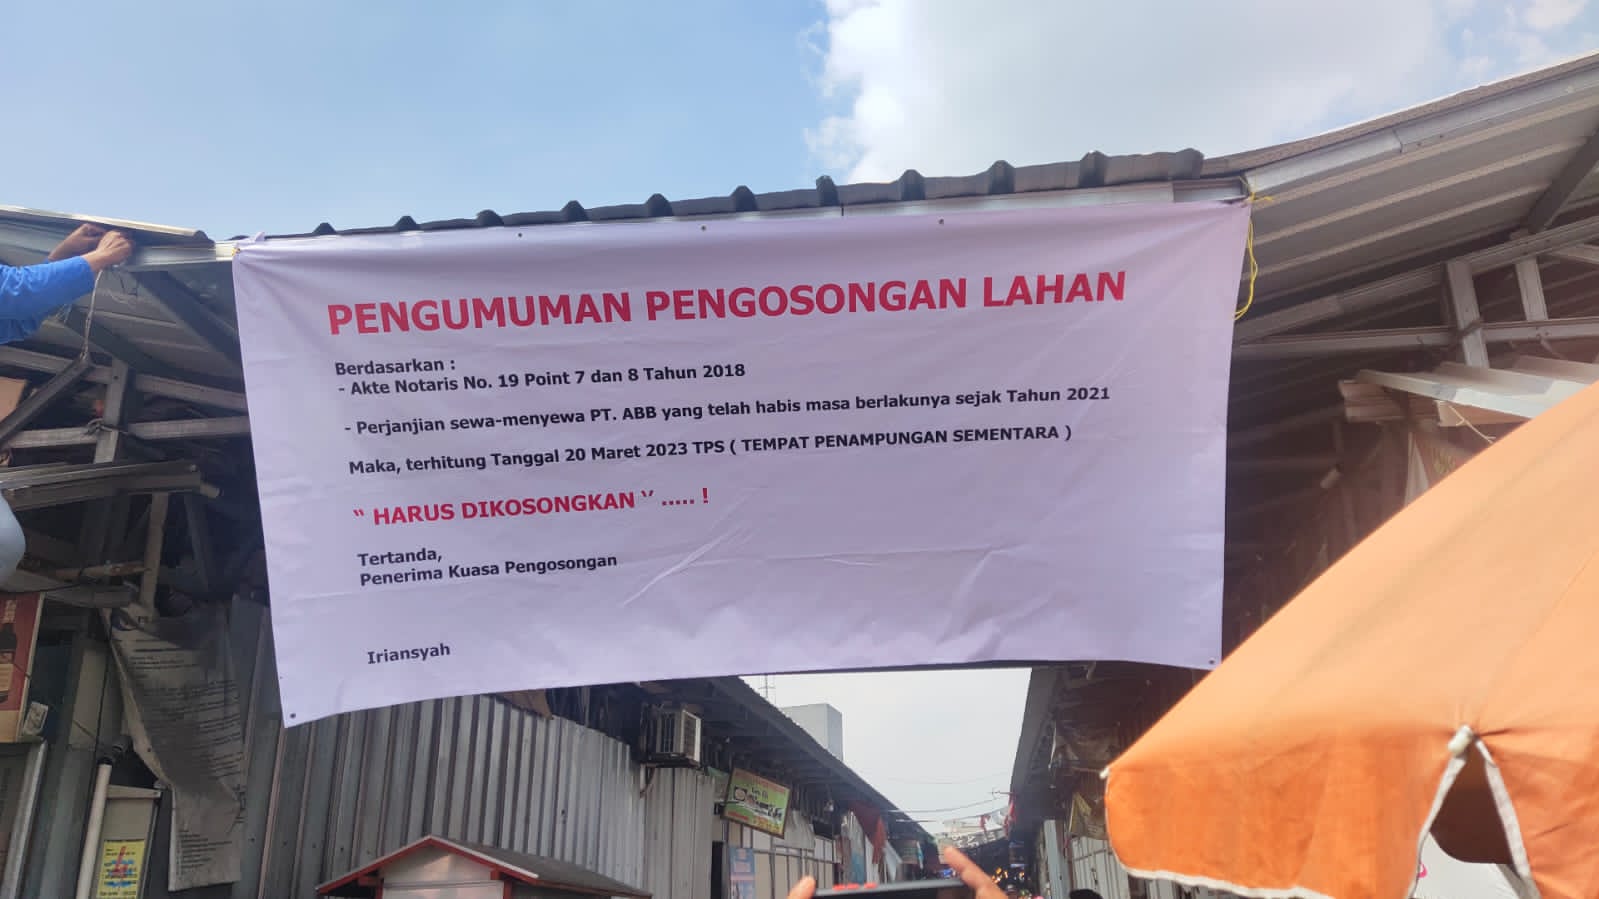 Spanduk Pengumuman Pengosongan Lahan Terpasang di TPS Pasar Kranji   